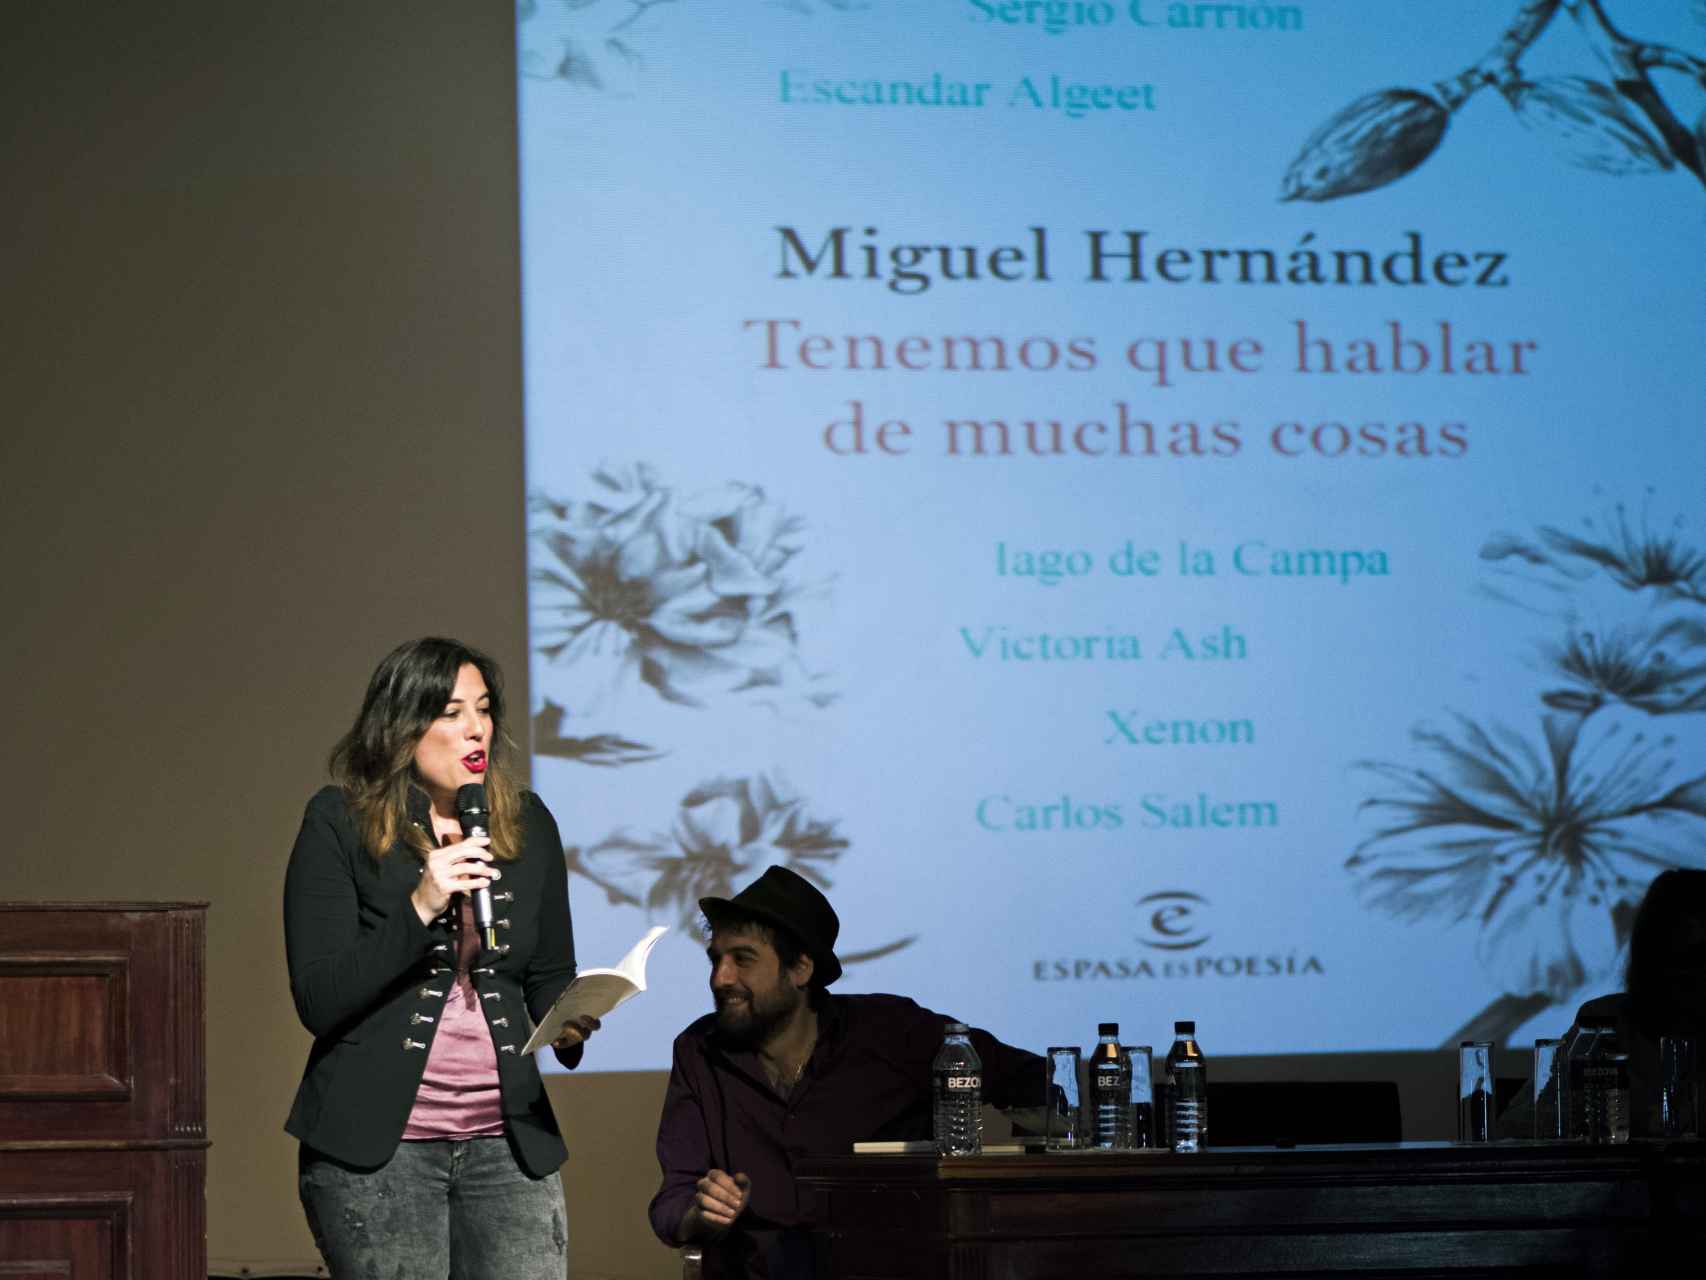 La poeta Victoria Ash en primera línea y el poeta Escandar Algeet, de fondo, homenajeando a Hernández.